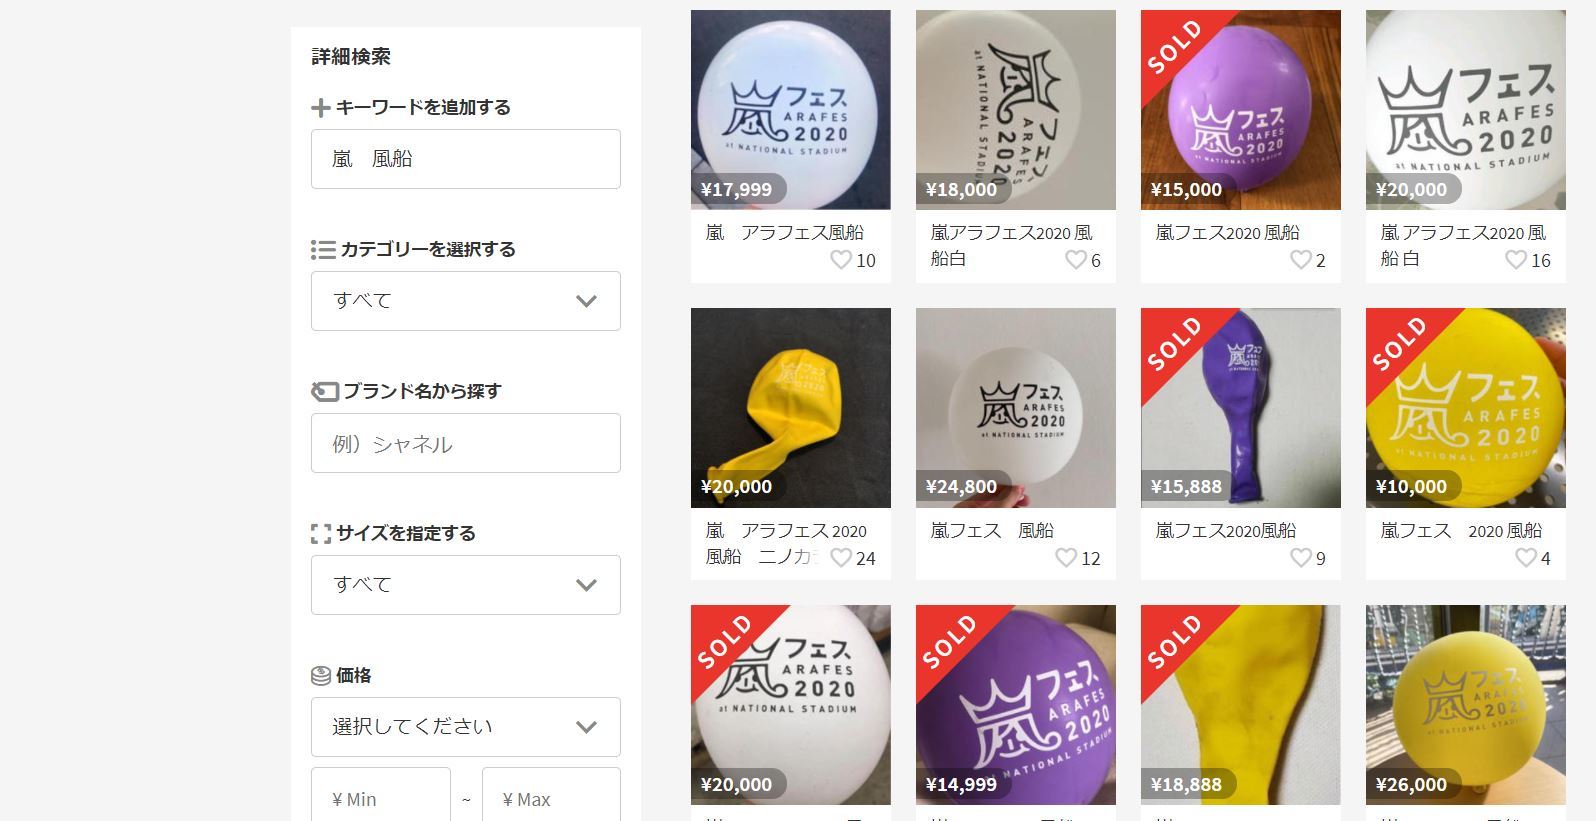 嵐ライブの風船、メルカリで高額取引 5色セットで4万円超も ネット上で ...